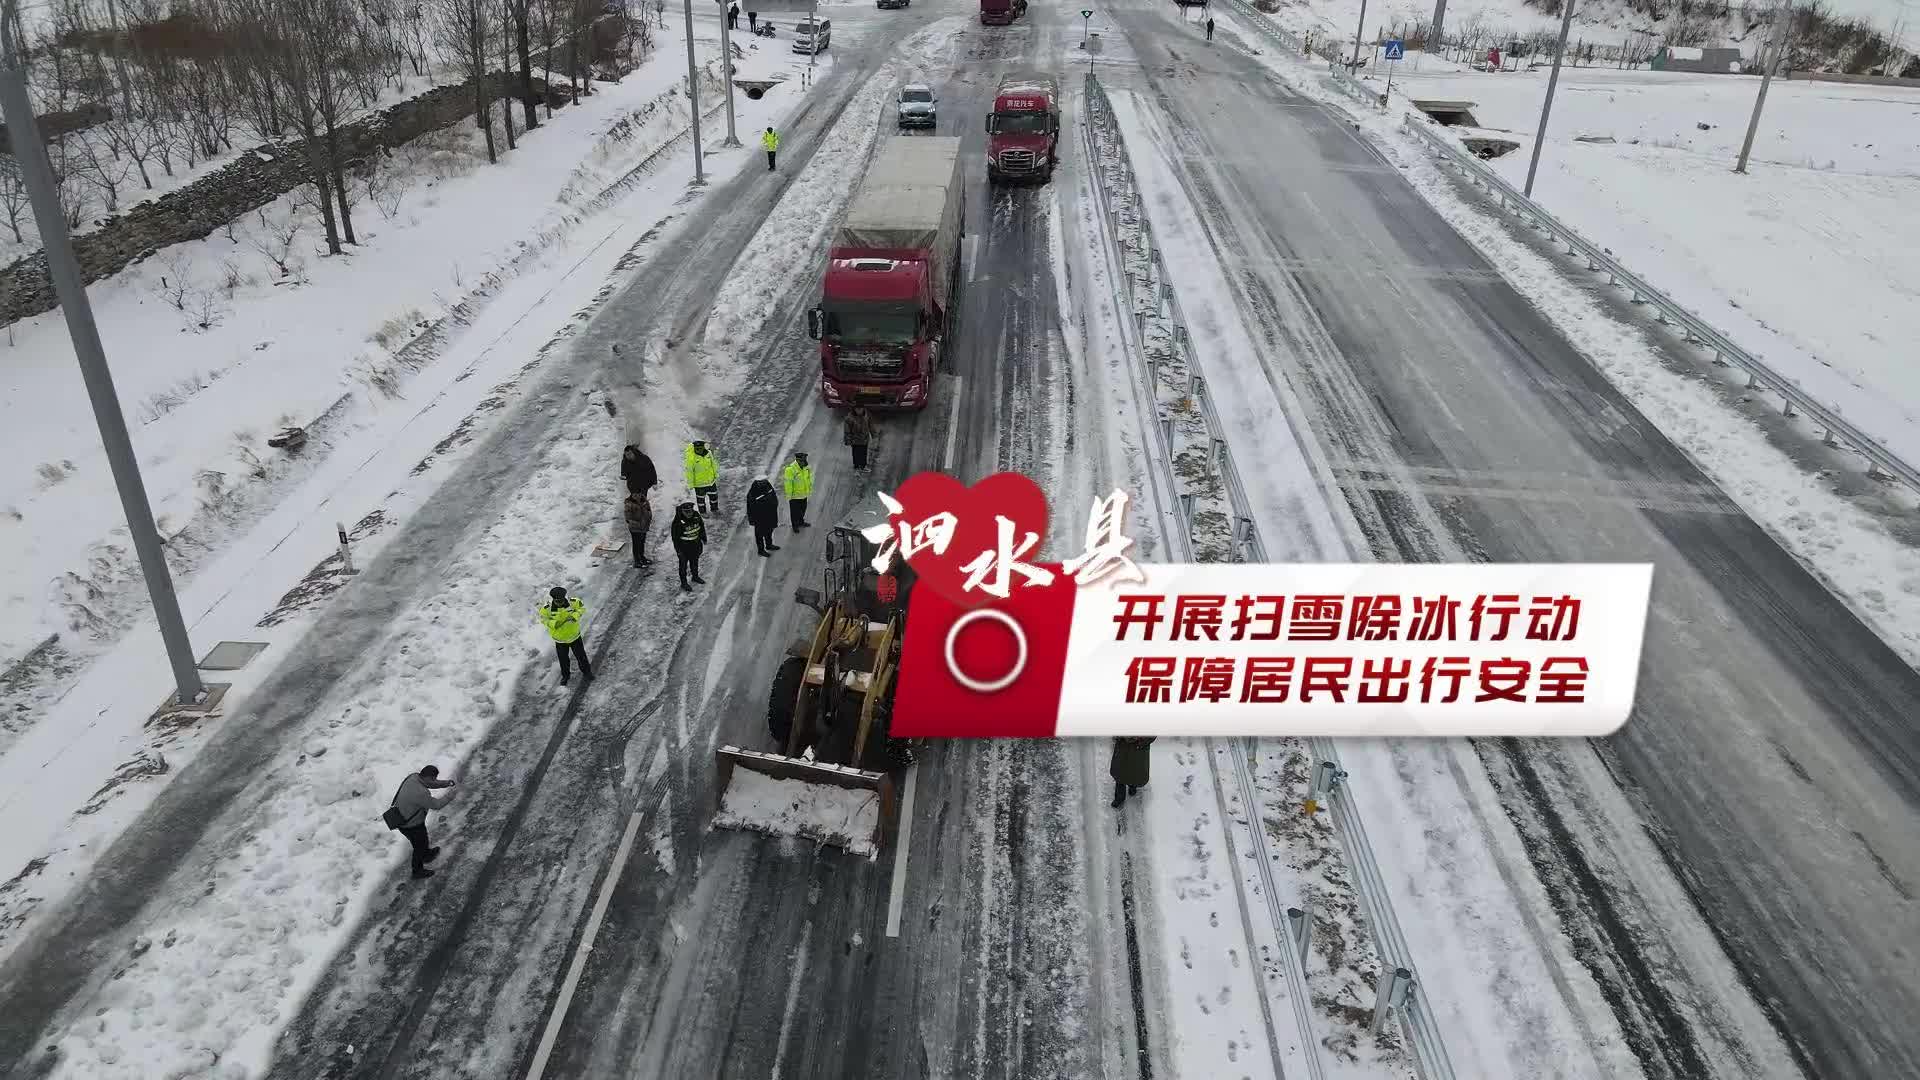 更济宁 | 开展扫雪除冰行动 保障居民出行安全